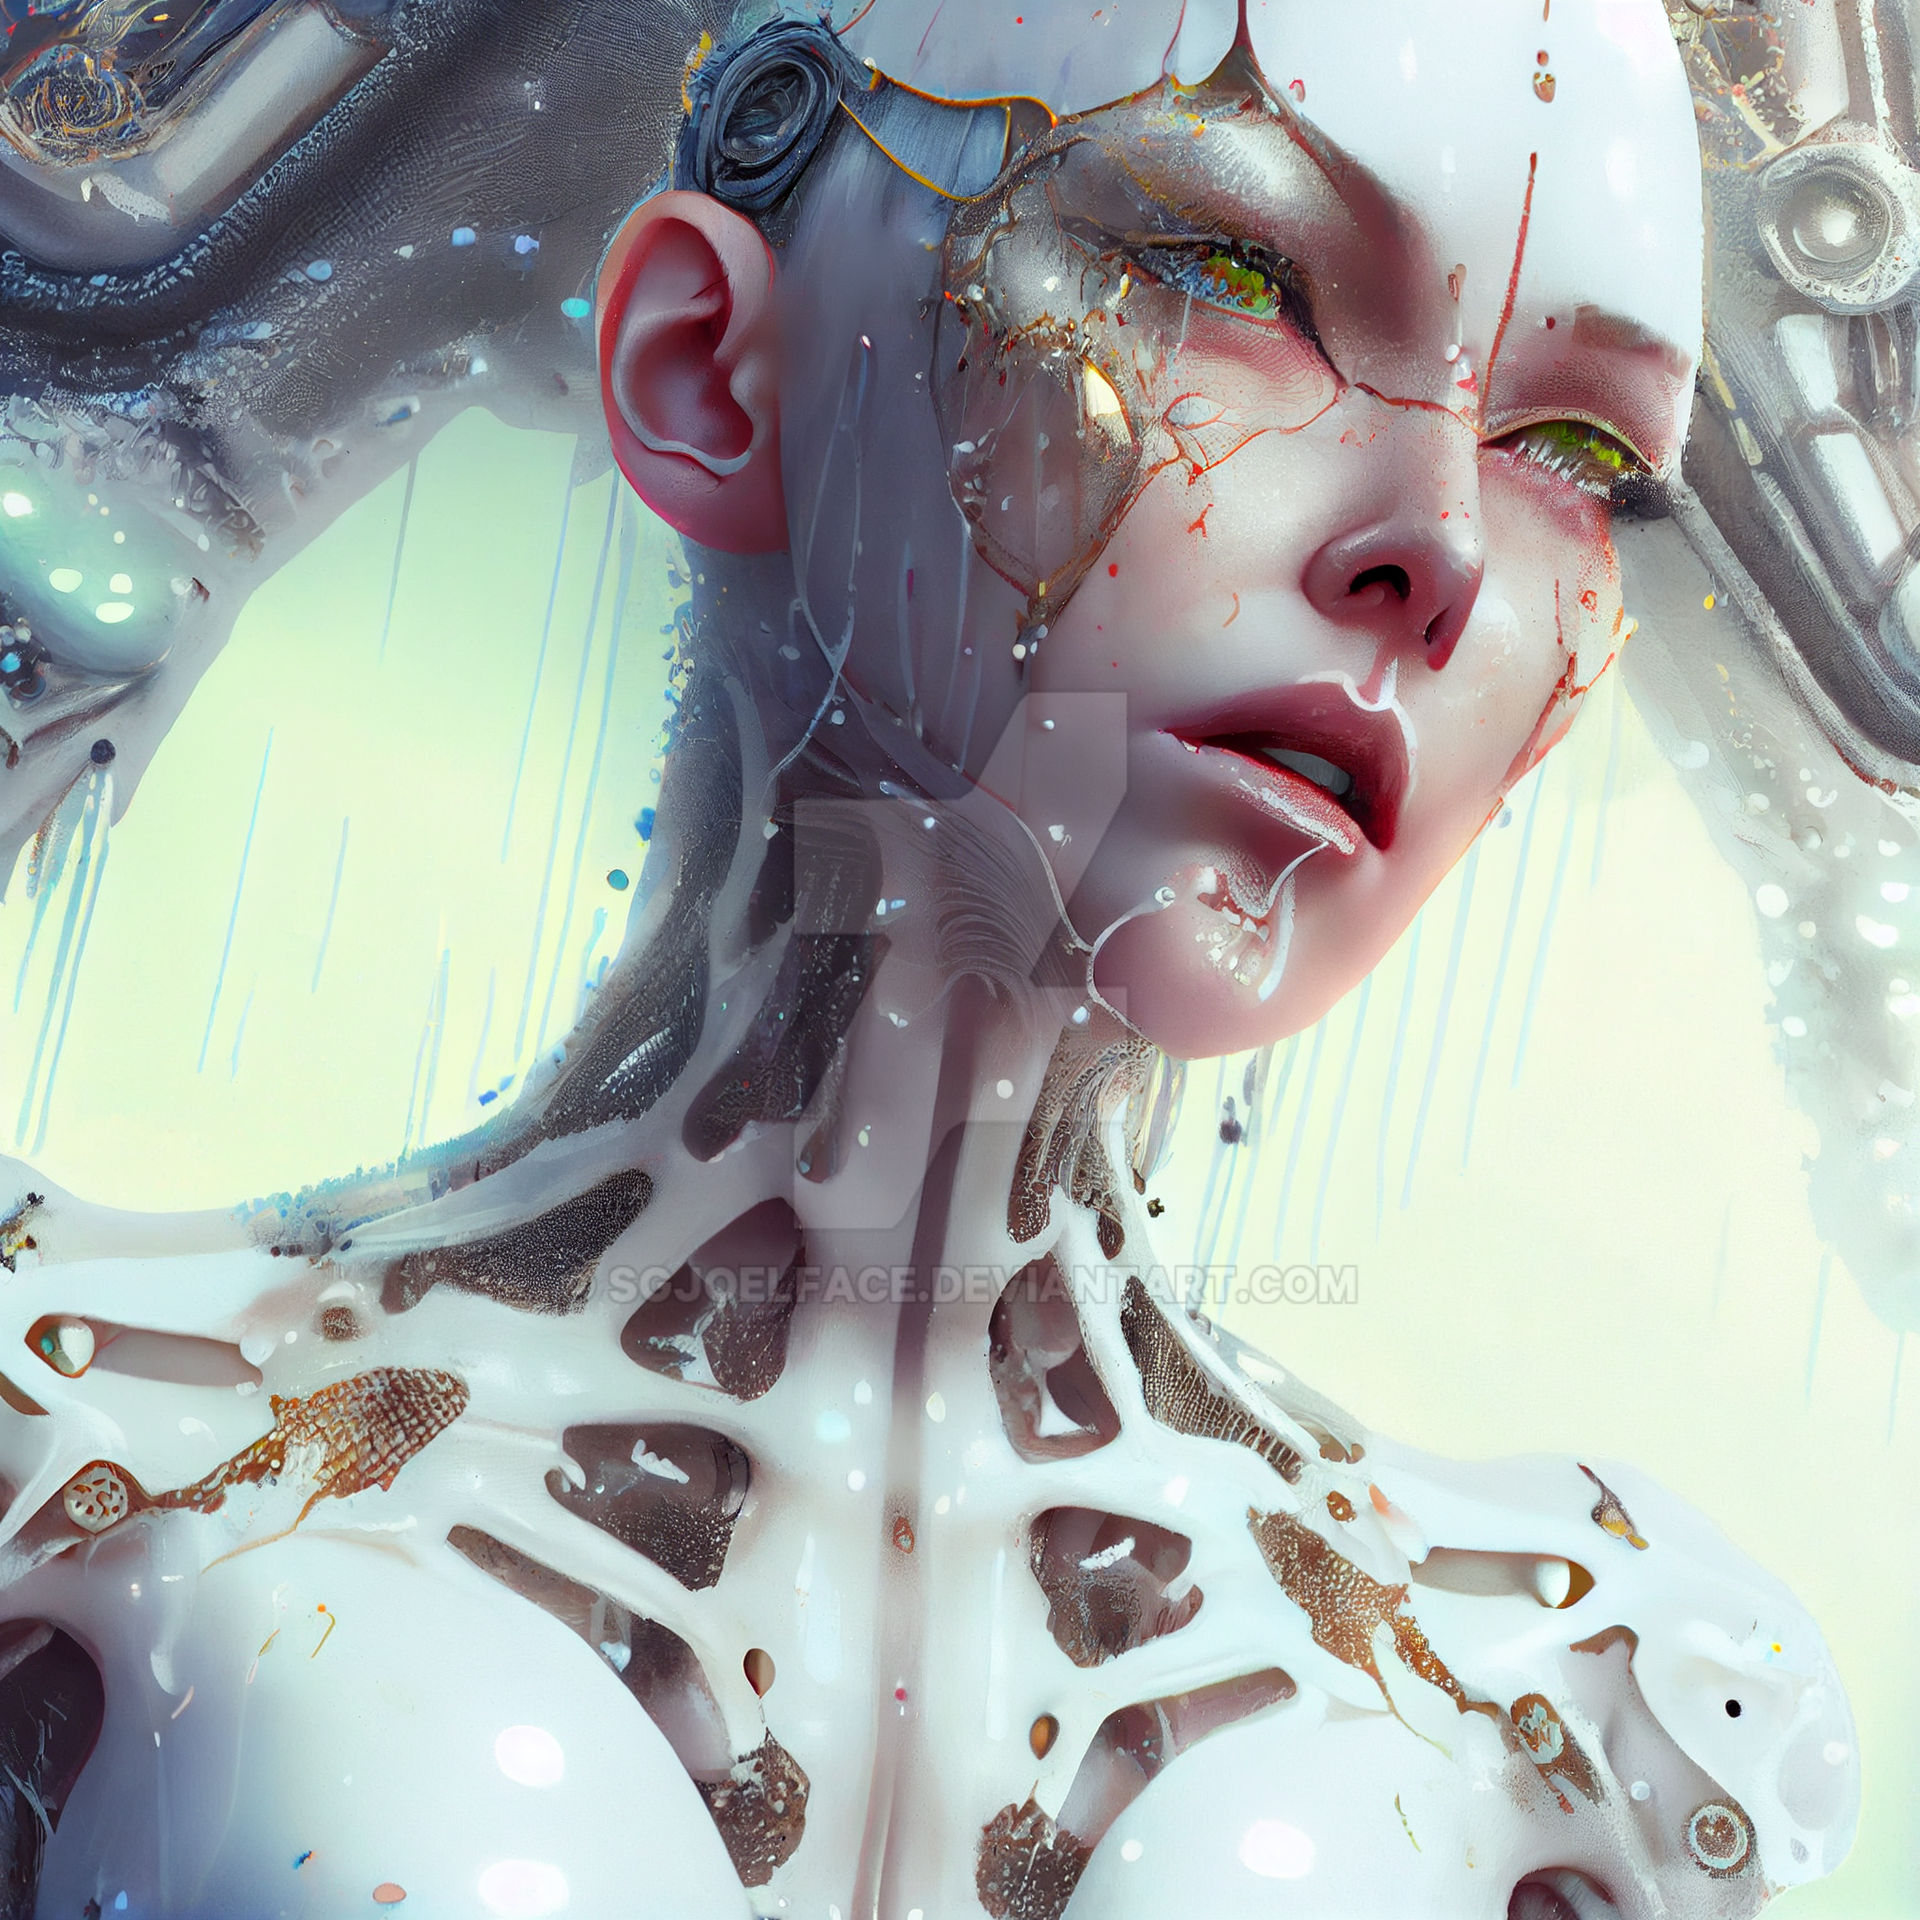 Ai Art - Synthetic Angel (7) by sgjoelface on DeviantArt